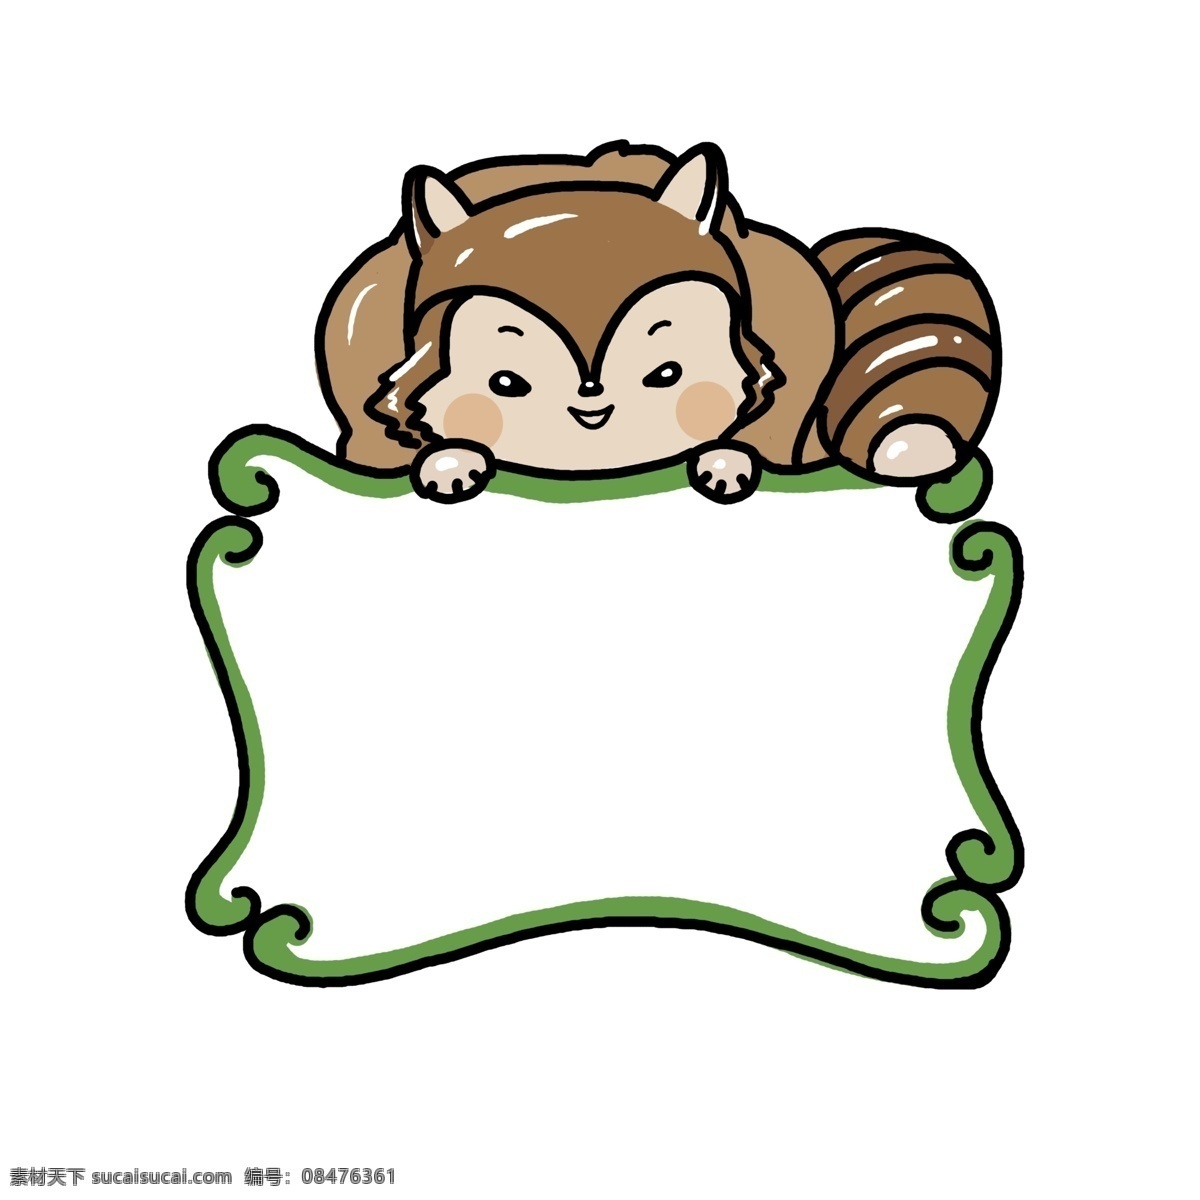 手绘 动物 松鼠 边框 可爱的松鼠 漂亮的边框 卡通边框 手绘动物边框 棕色的松鼠 创意松鼠边框